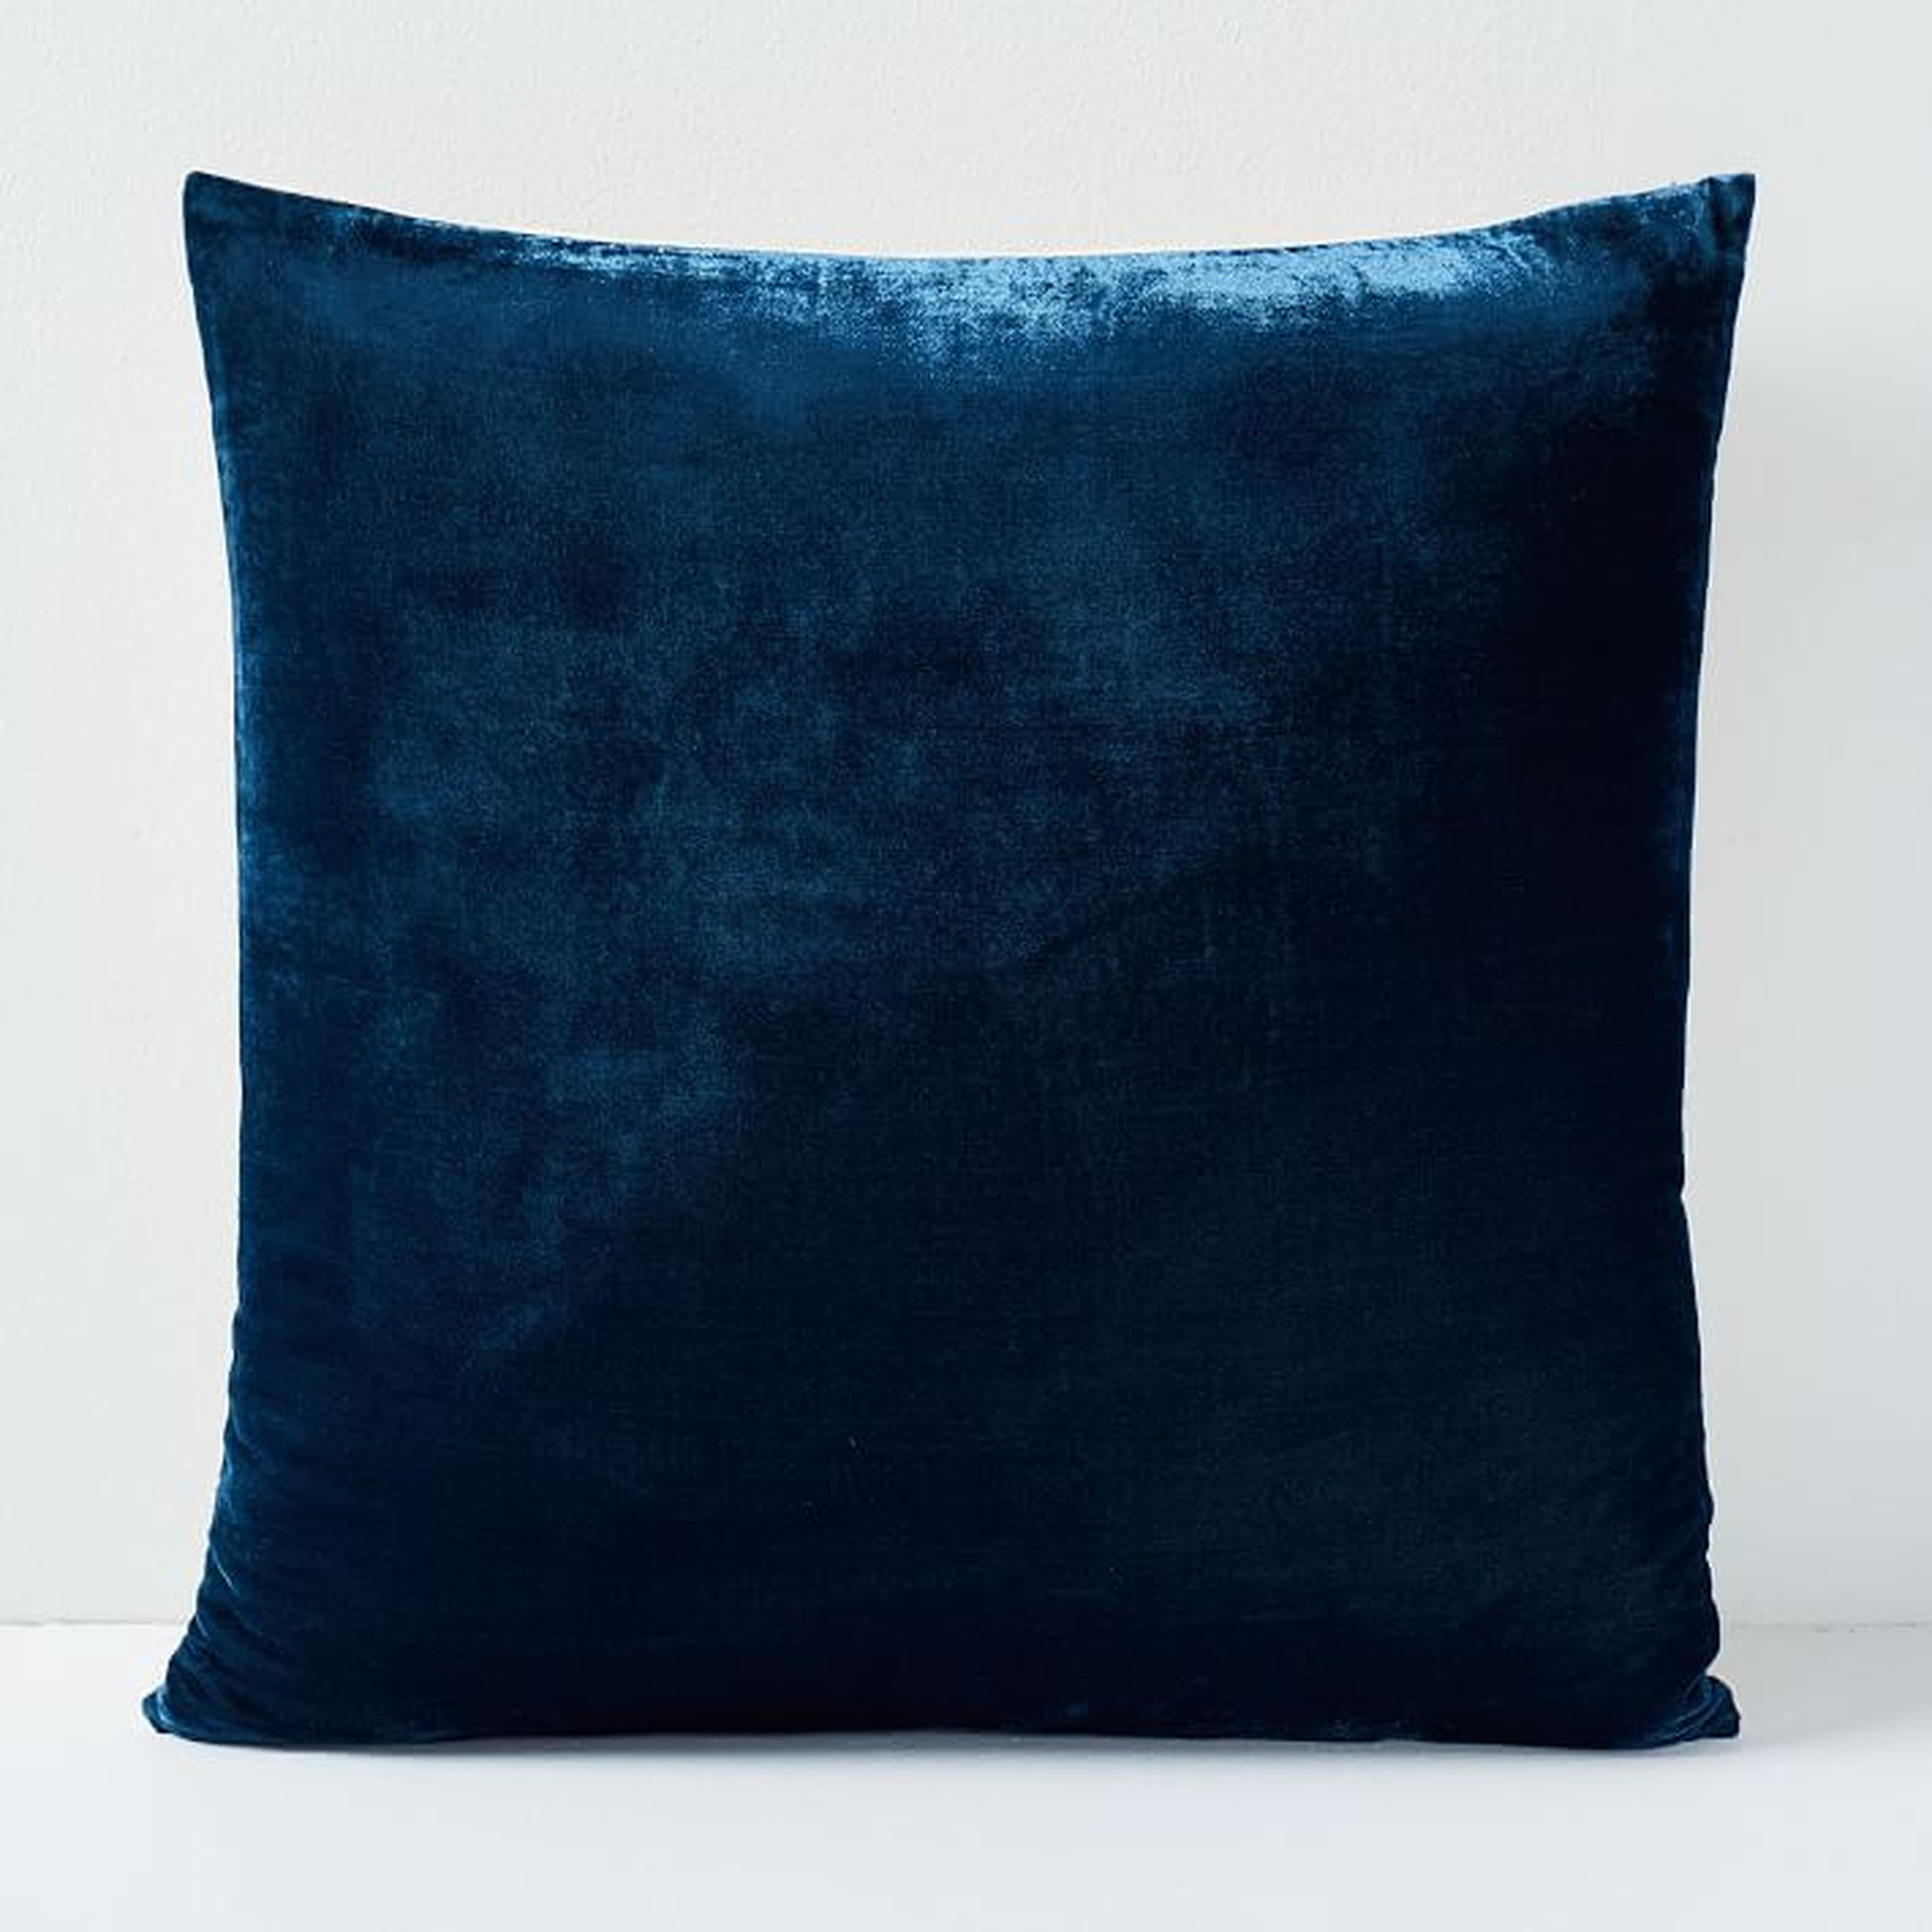 Lush Velvet Pillow Cover - Regal Blue - West Elm